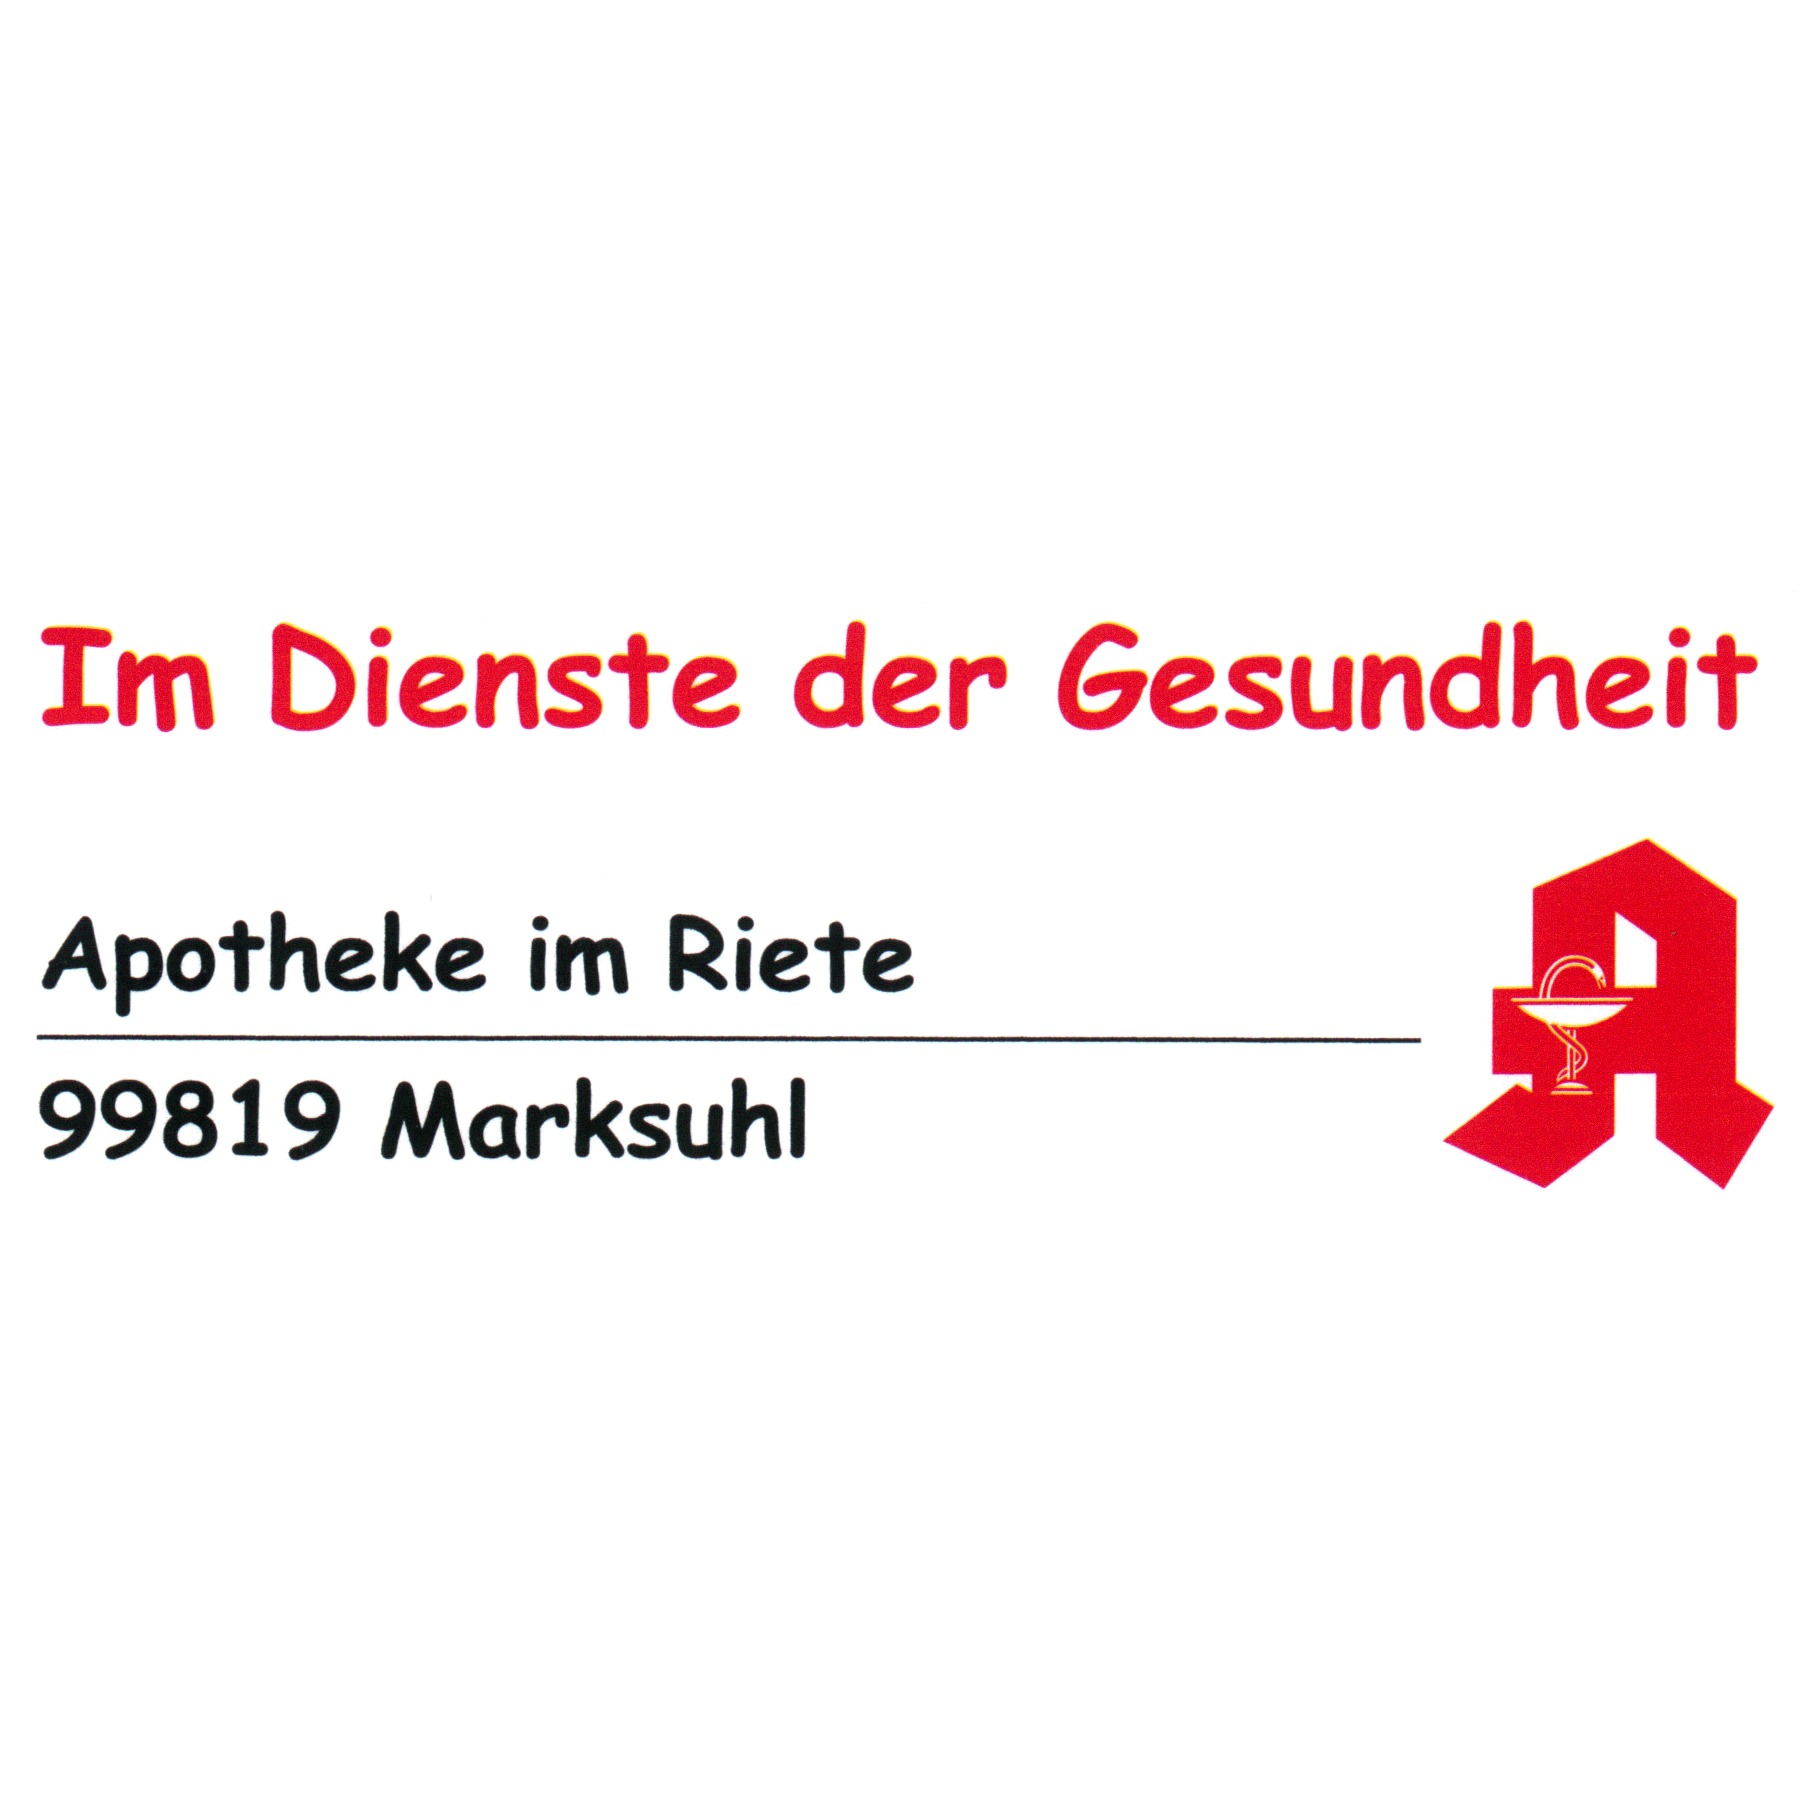 Apotheke im Riete in Gerstungen - Logo